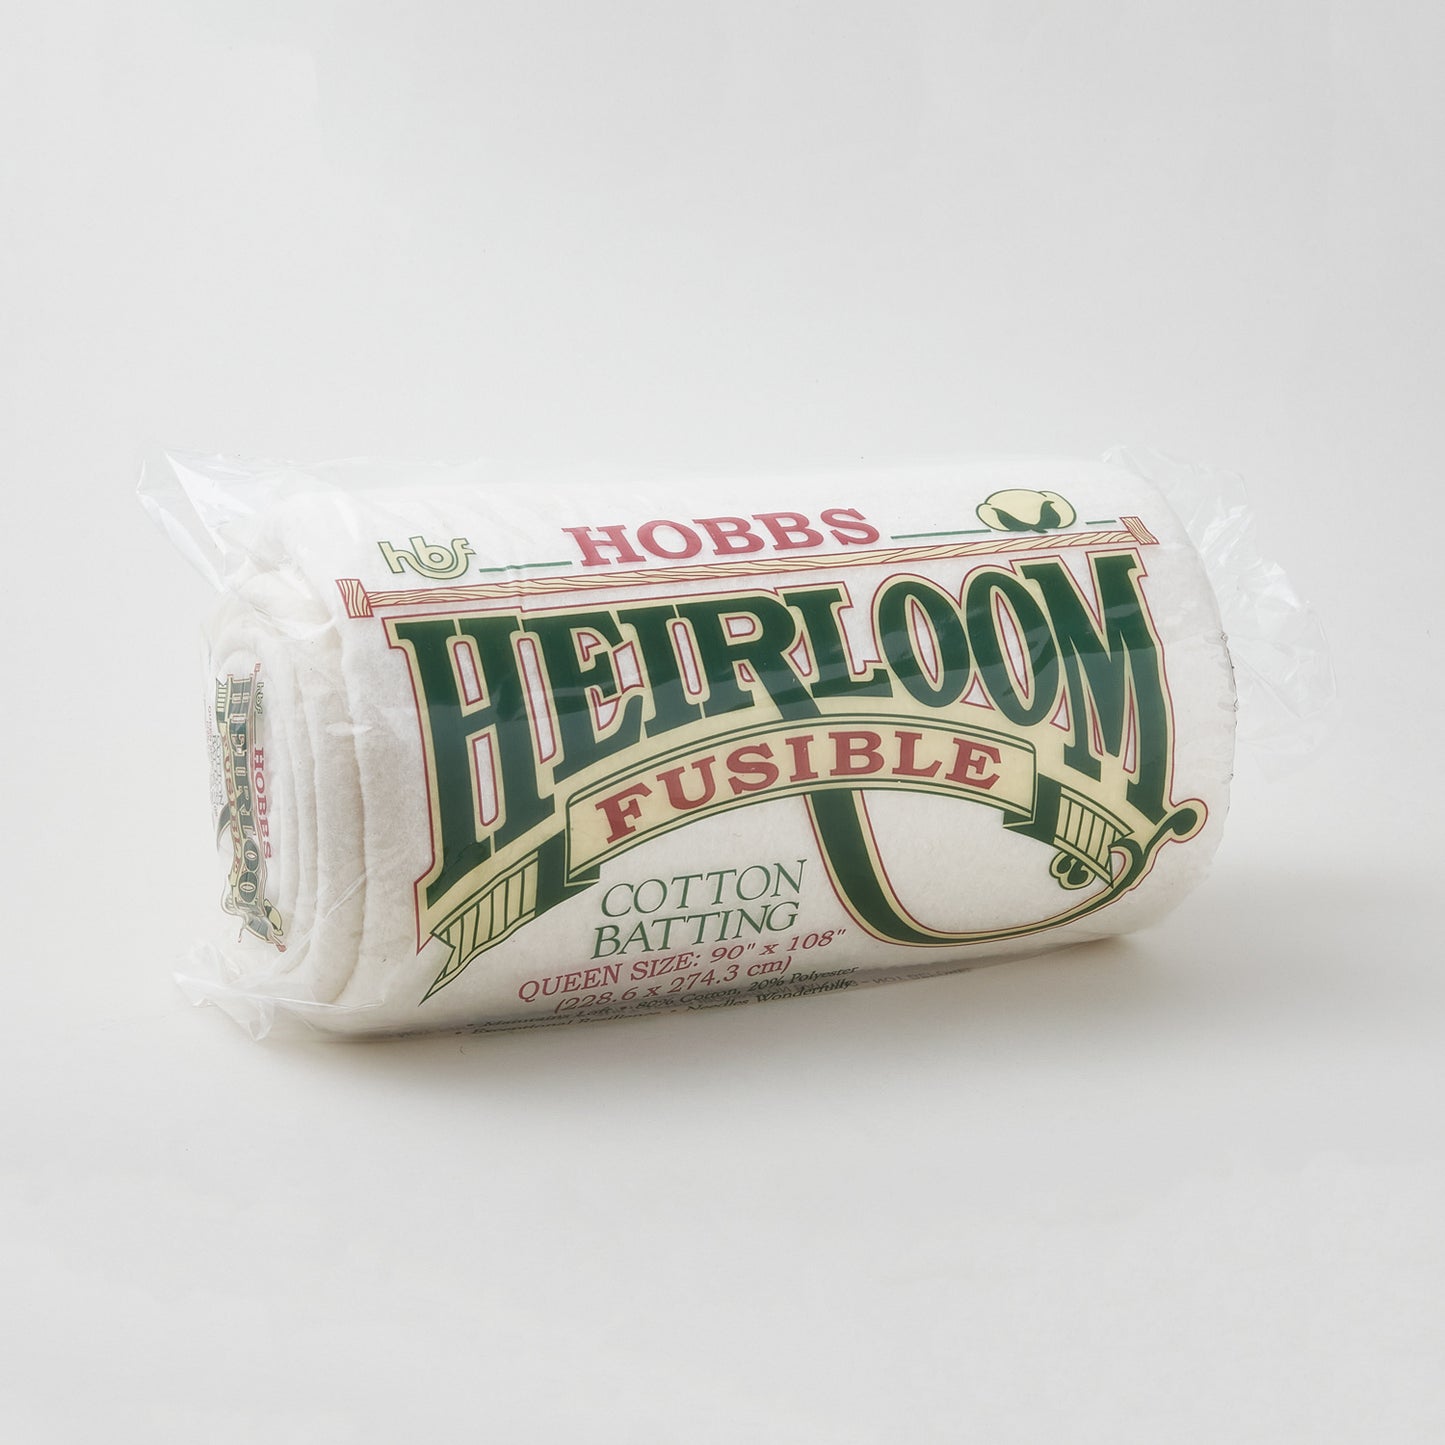 Hobbs Heirloom 80/20 Fusible Cotton Batting - Queen 90" x 108" Primary Image